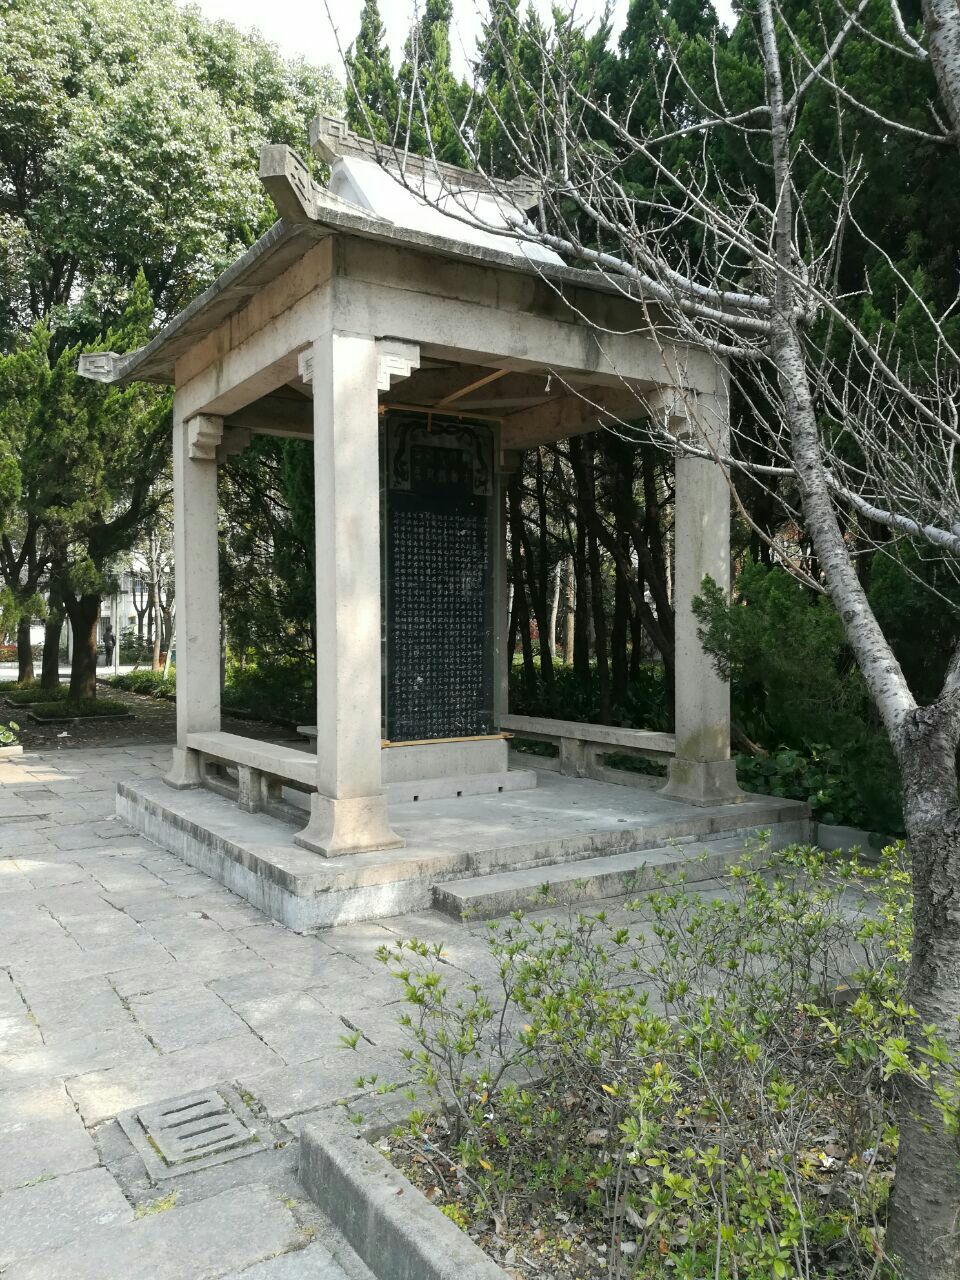 【携程攻略】上海邹容纪念馆景点,在华泾新村旁边,临近上海位育高级